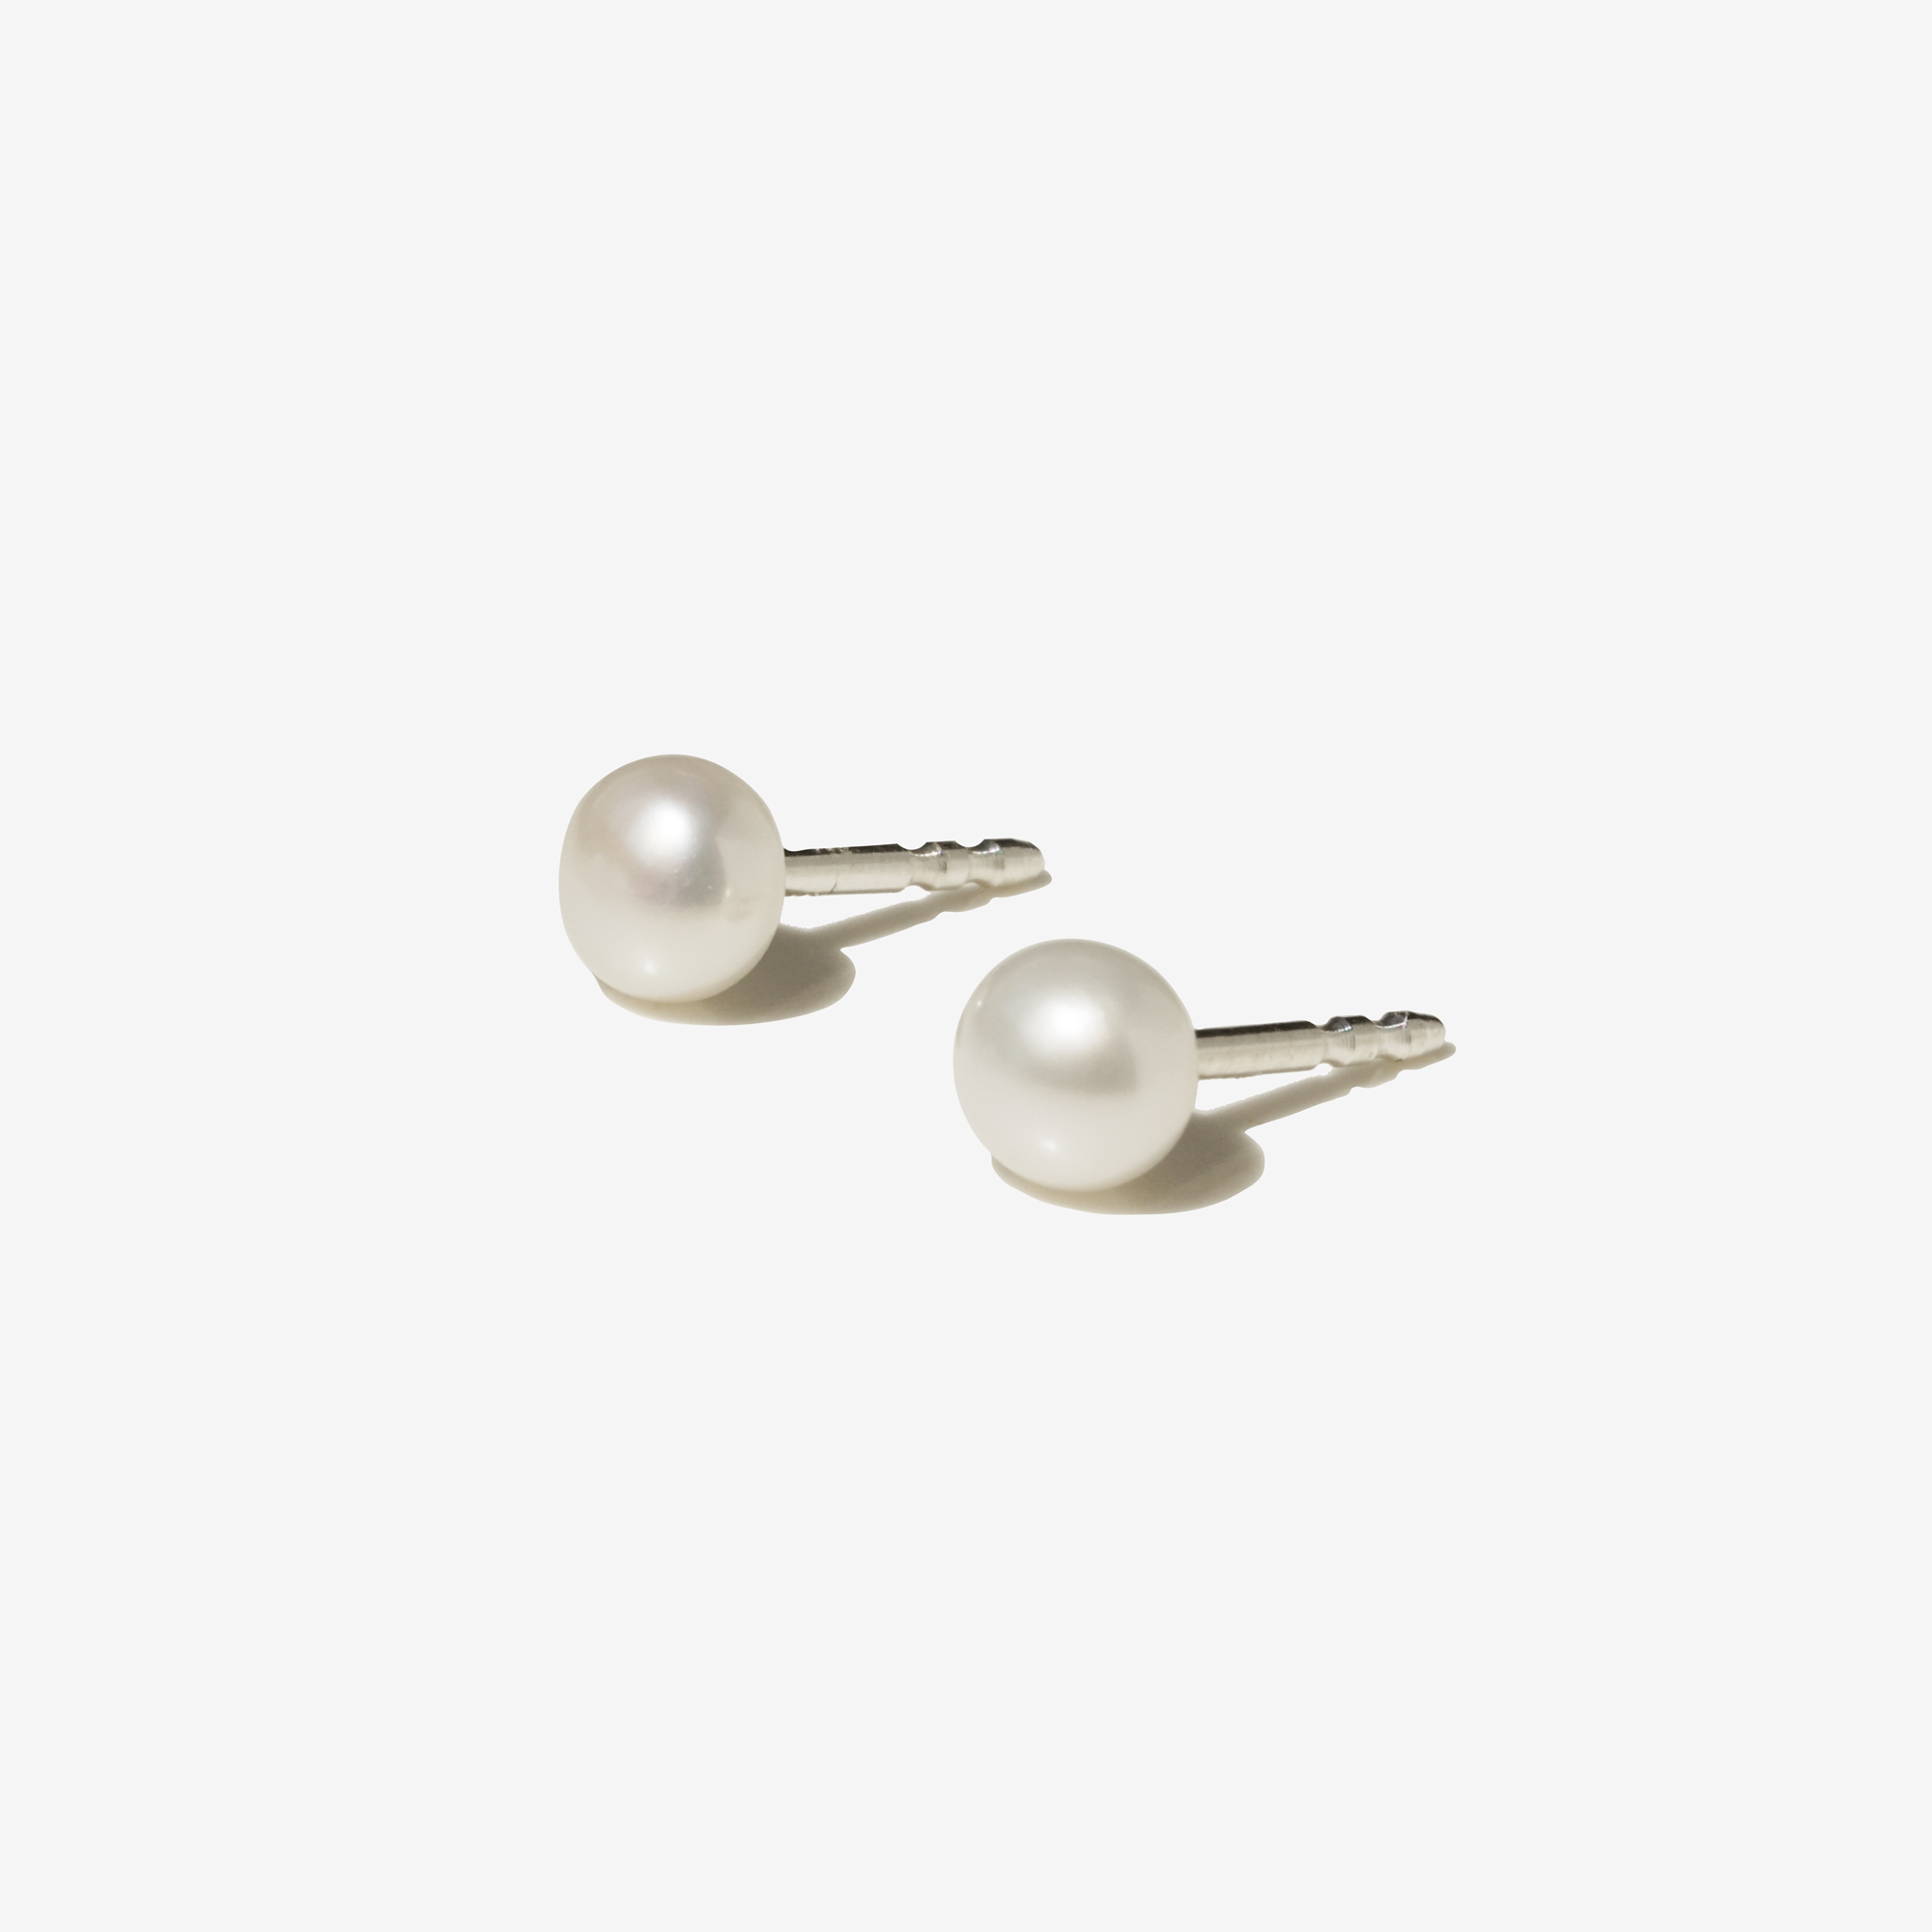 Single Pearl silver earrings - NURA.design